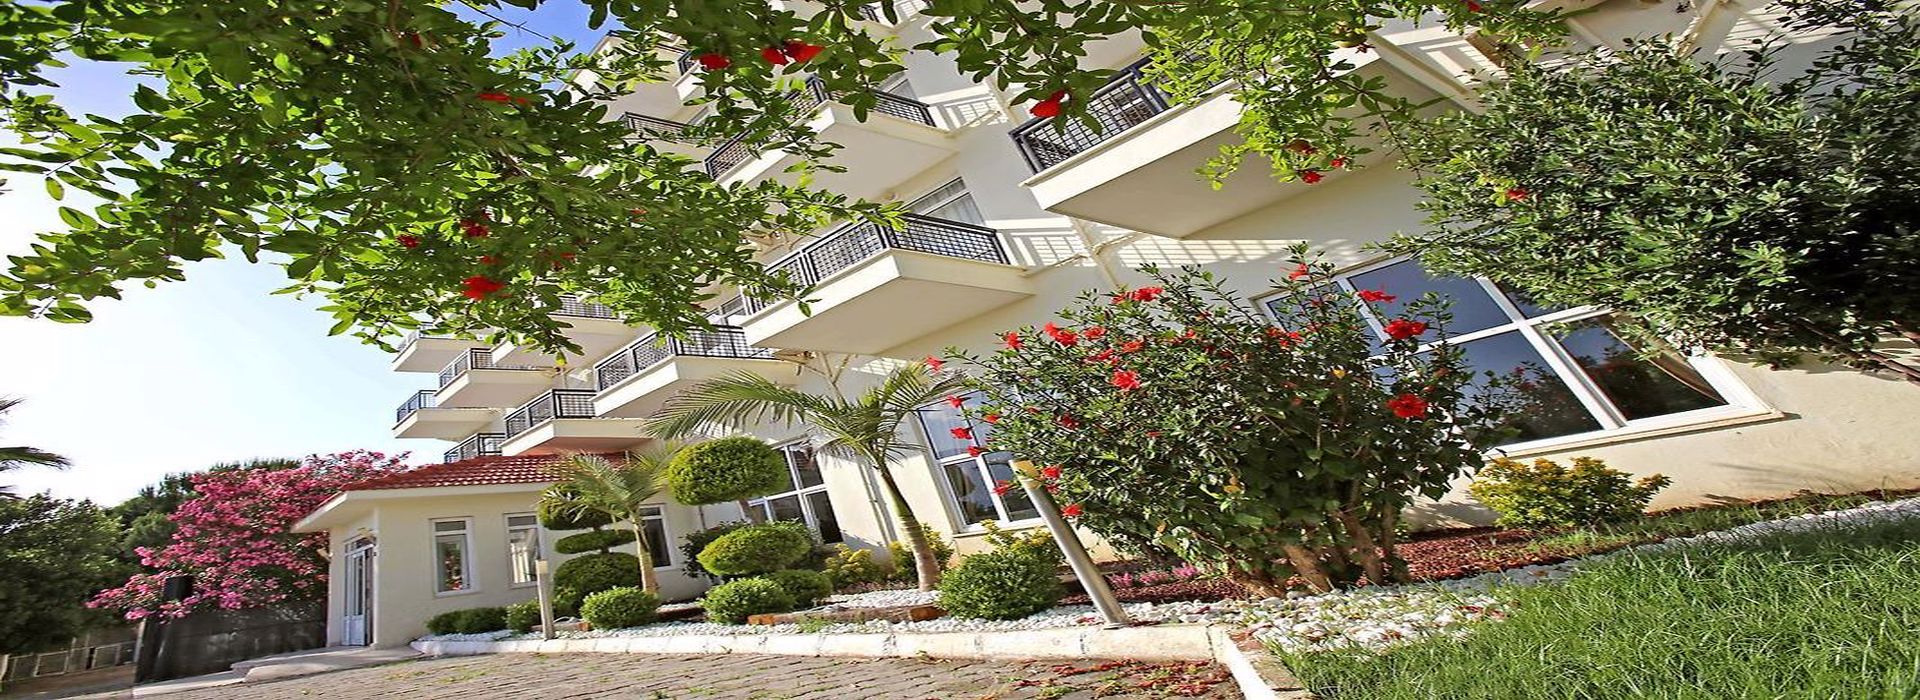 Malibu Resort Hotel Antalya 2